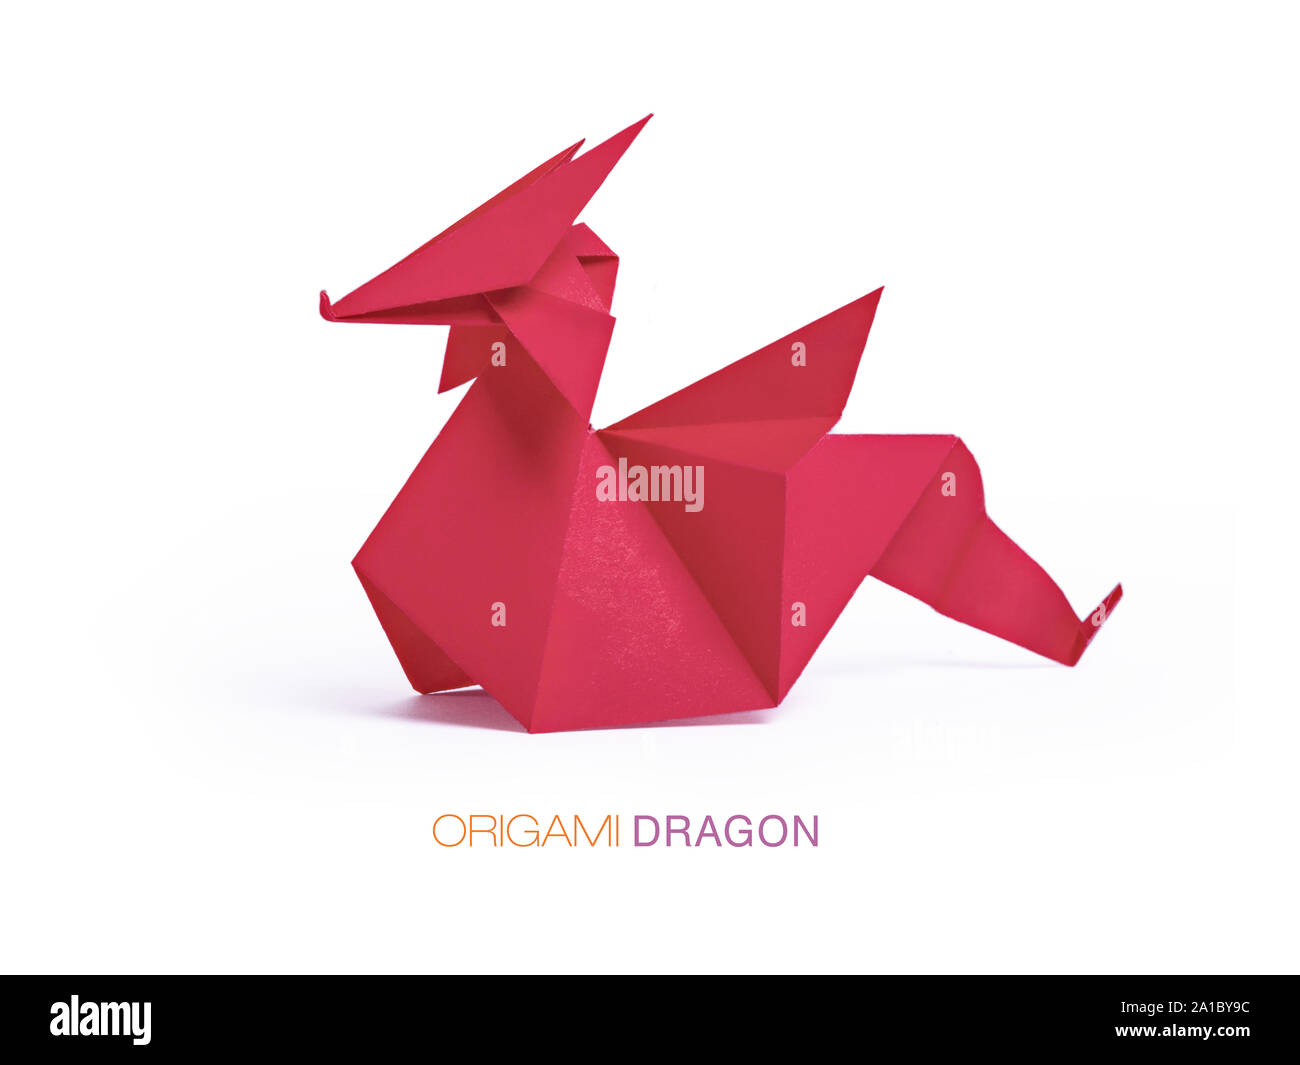 Origami di drago immagini e fotografie stock ad alta risoluzione - Alamy